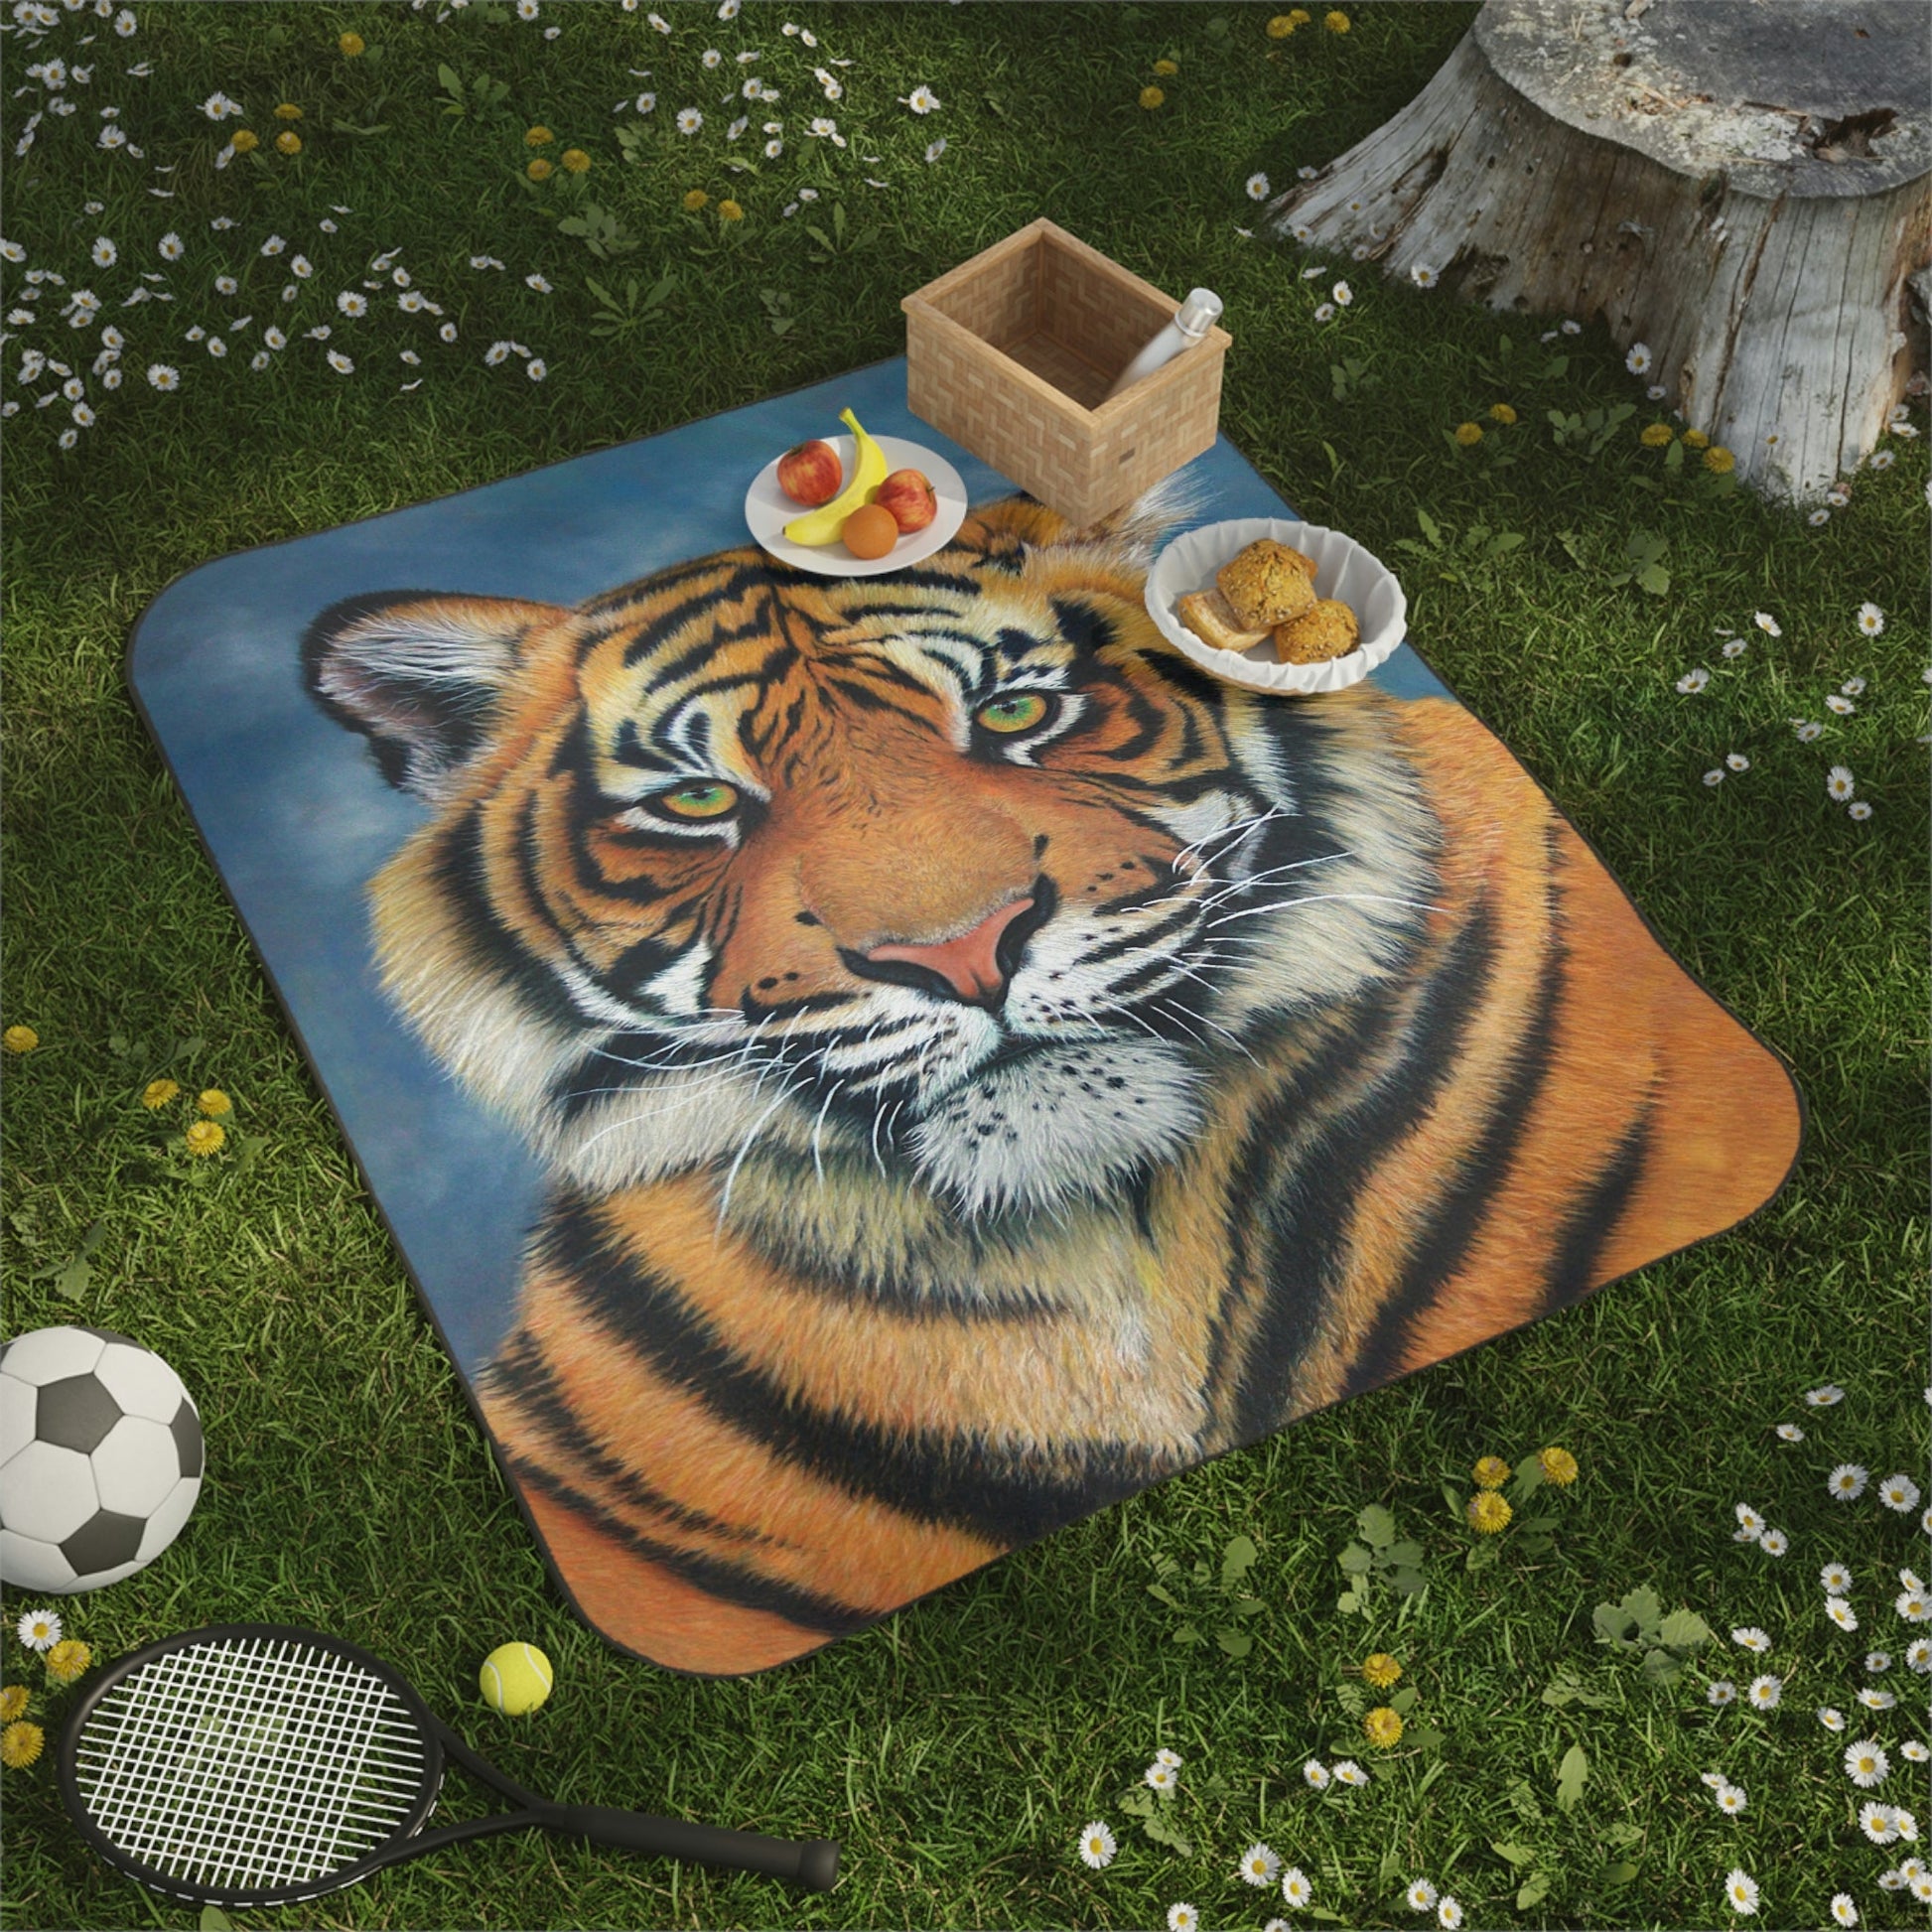 Picnic Blanket - "TIGER"